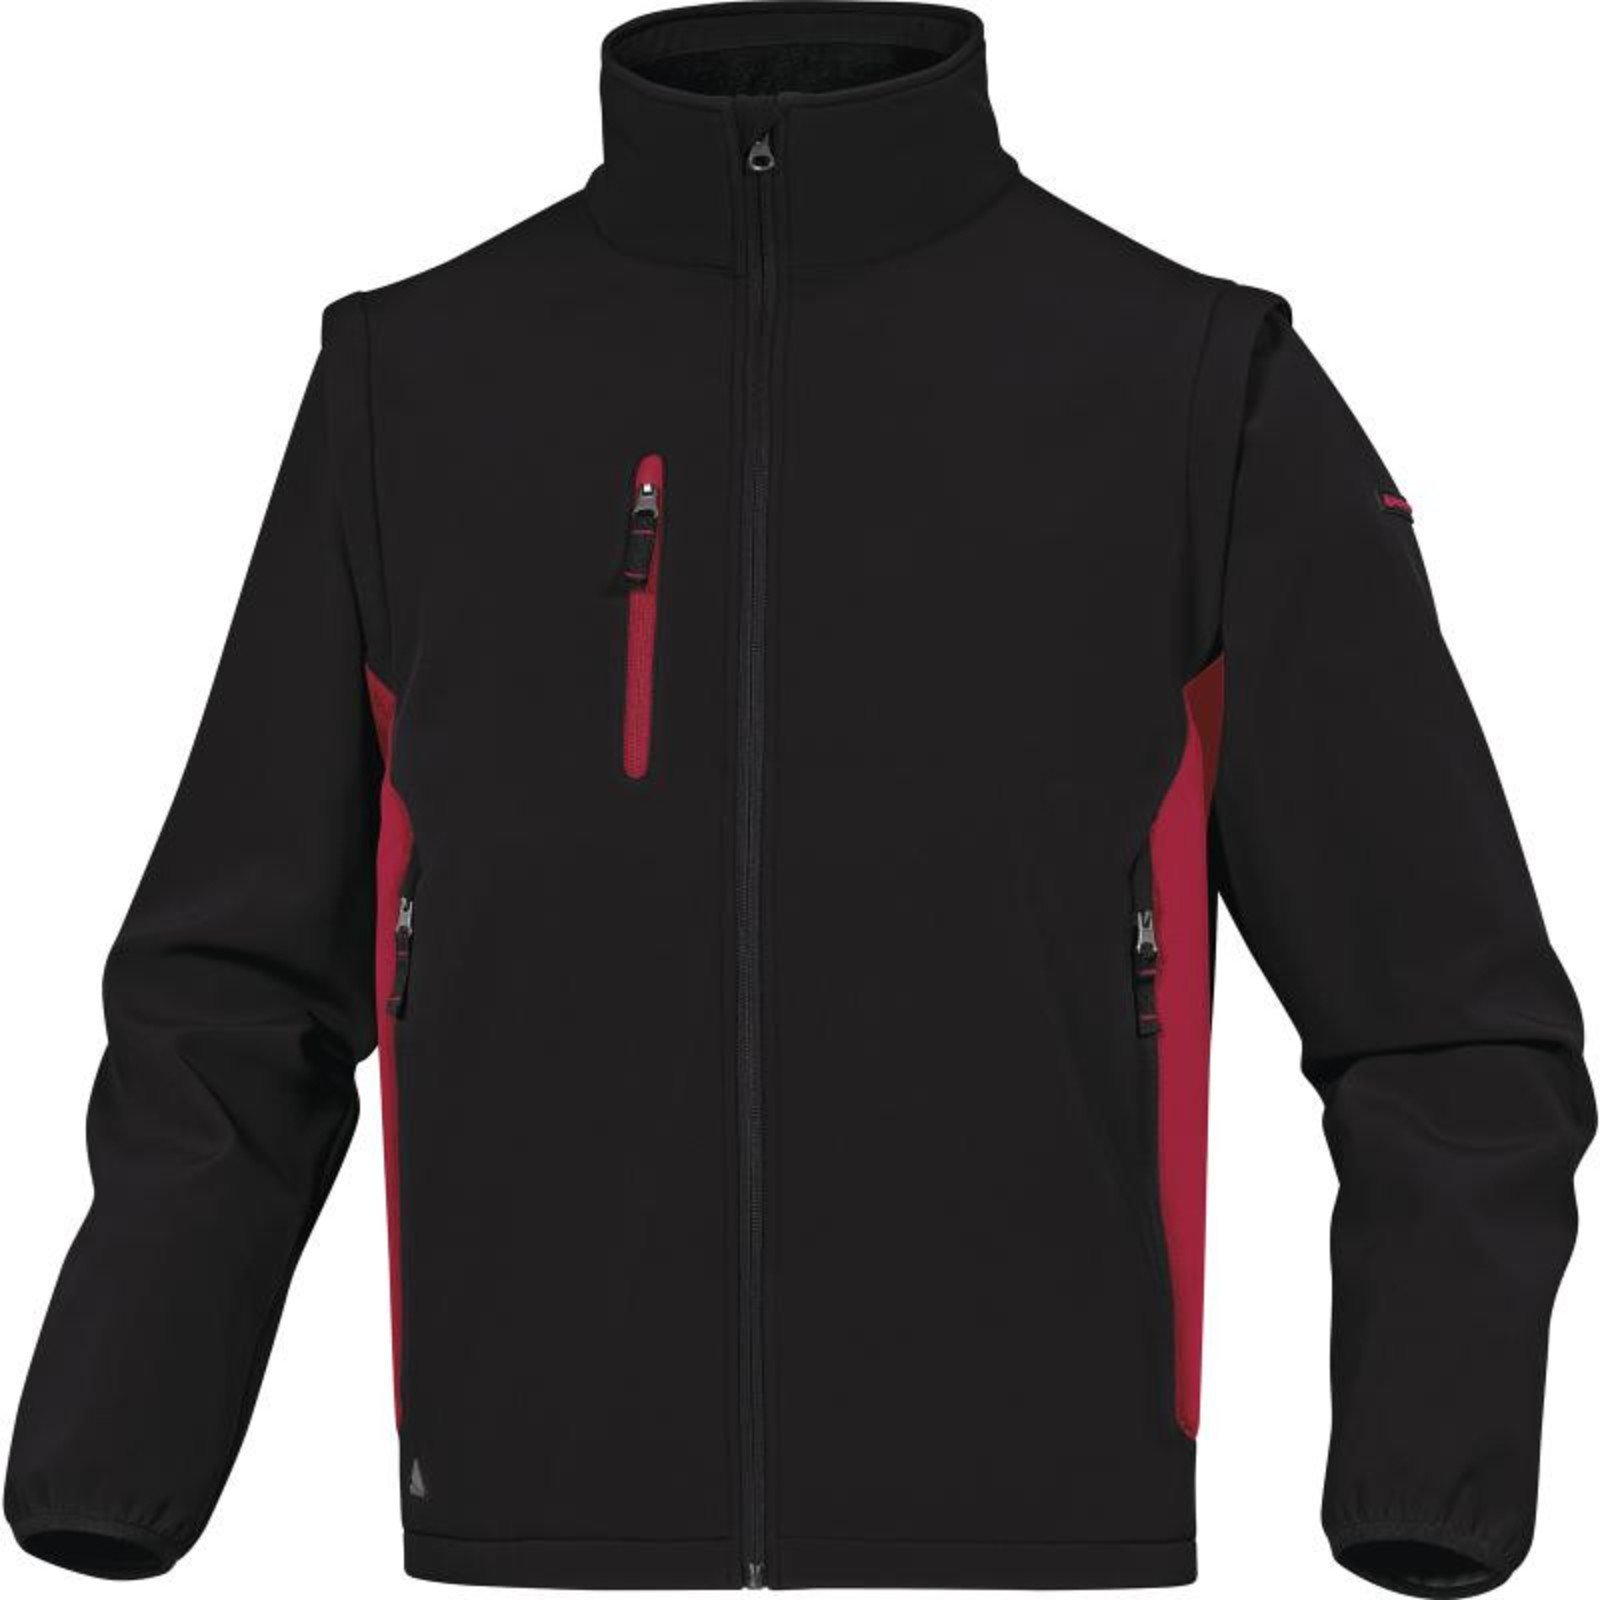 Softshellová bunda Delta Plus Mysen2 2v1 - veľkosť: M, farba: čierna/červená